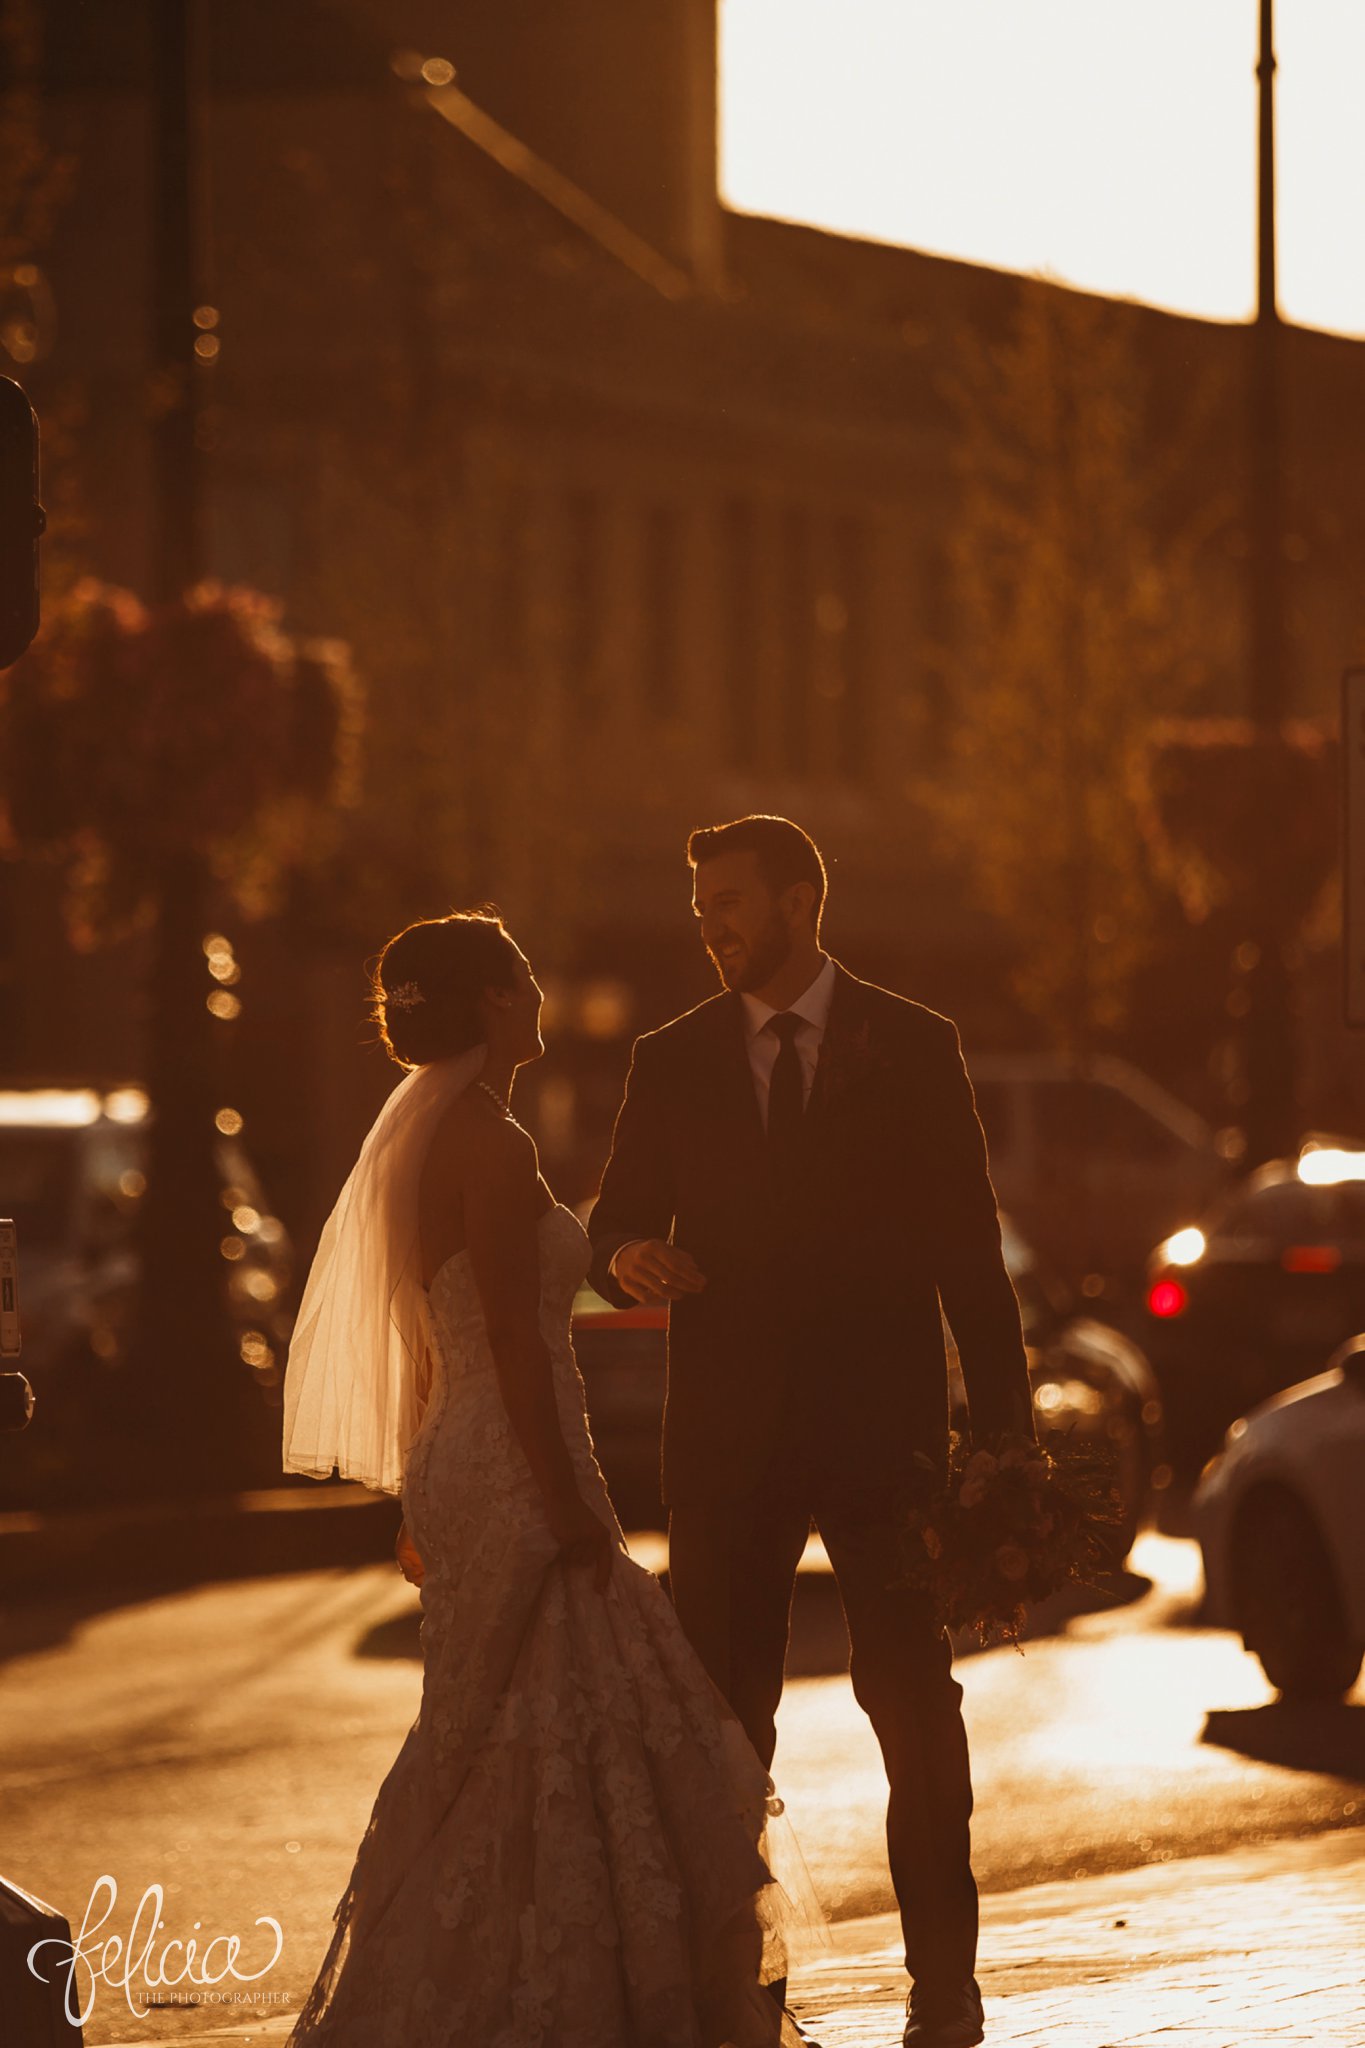 images by feliciathephotographer.com | wedding photographer | kansas city | sunset | golden hour | romantic | flowing veil | plaza venue | lace floral dress | emily hart | the black tux | 